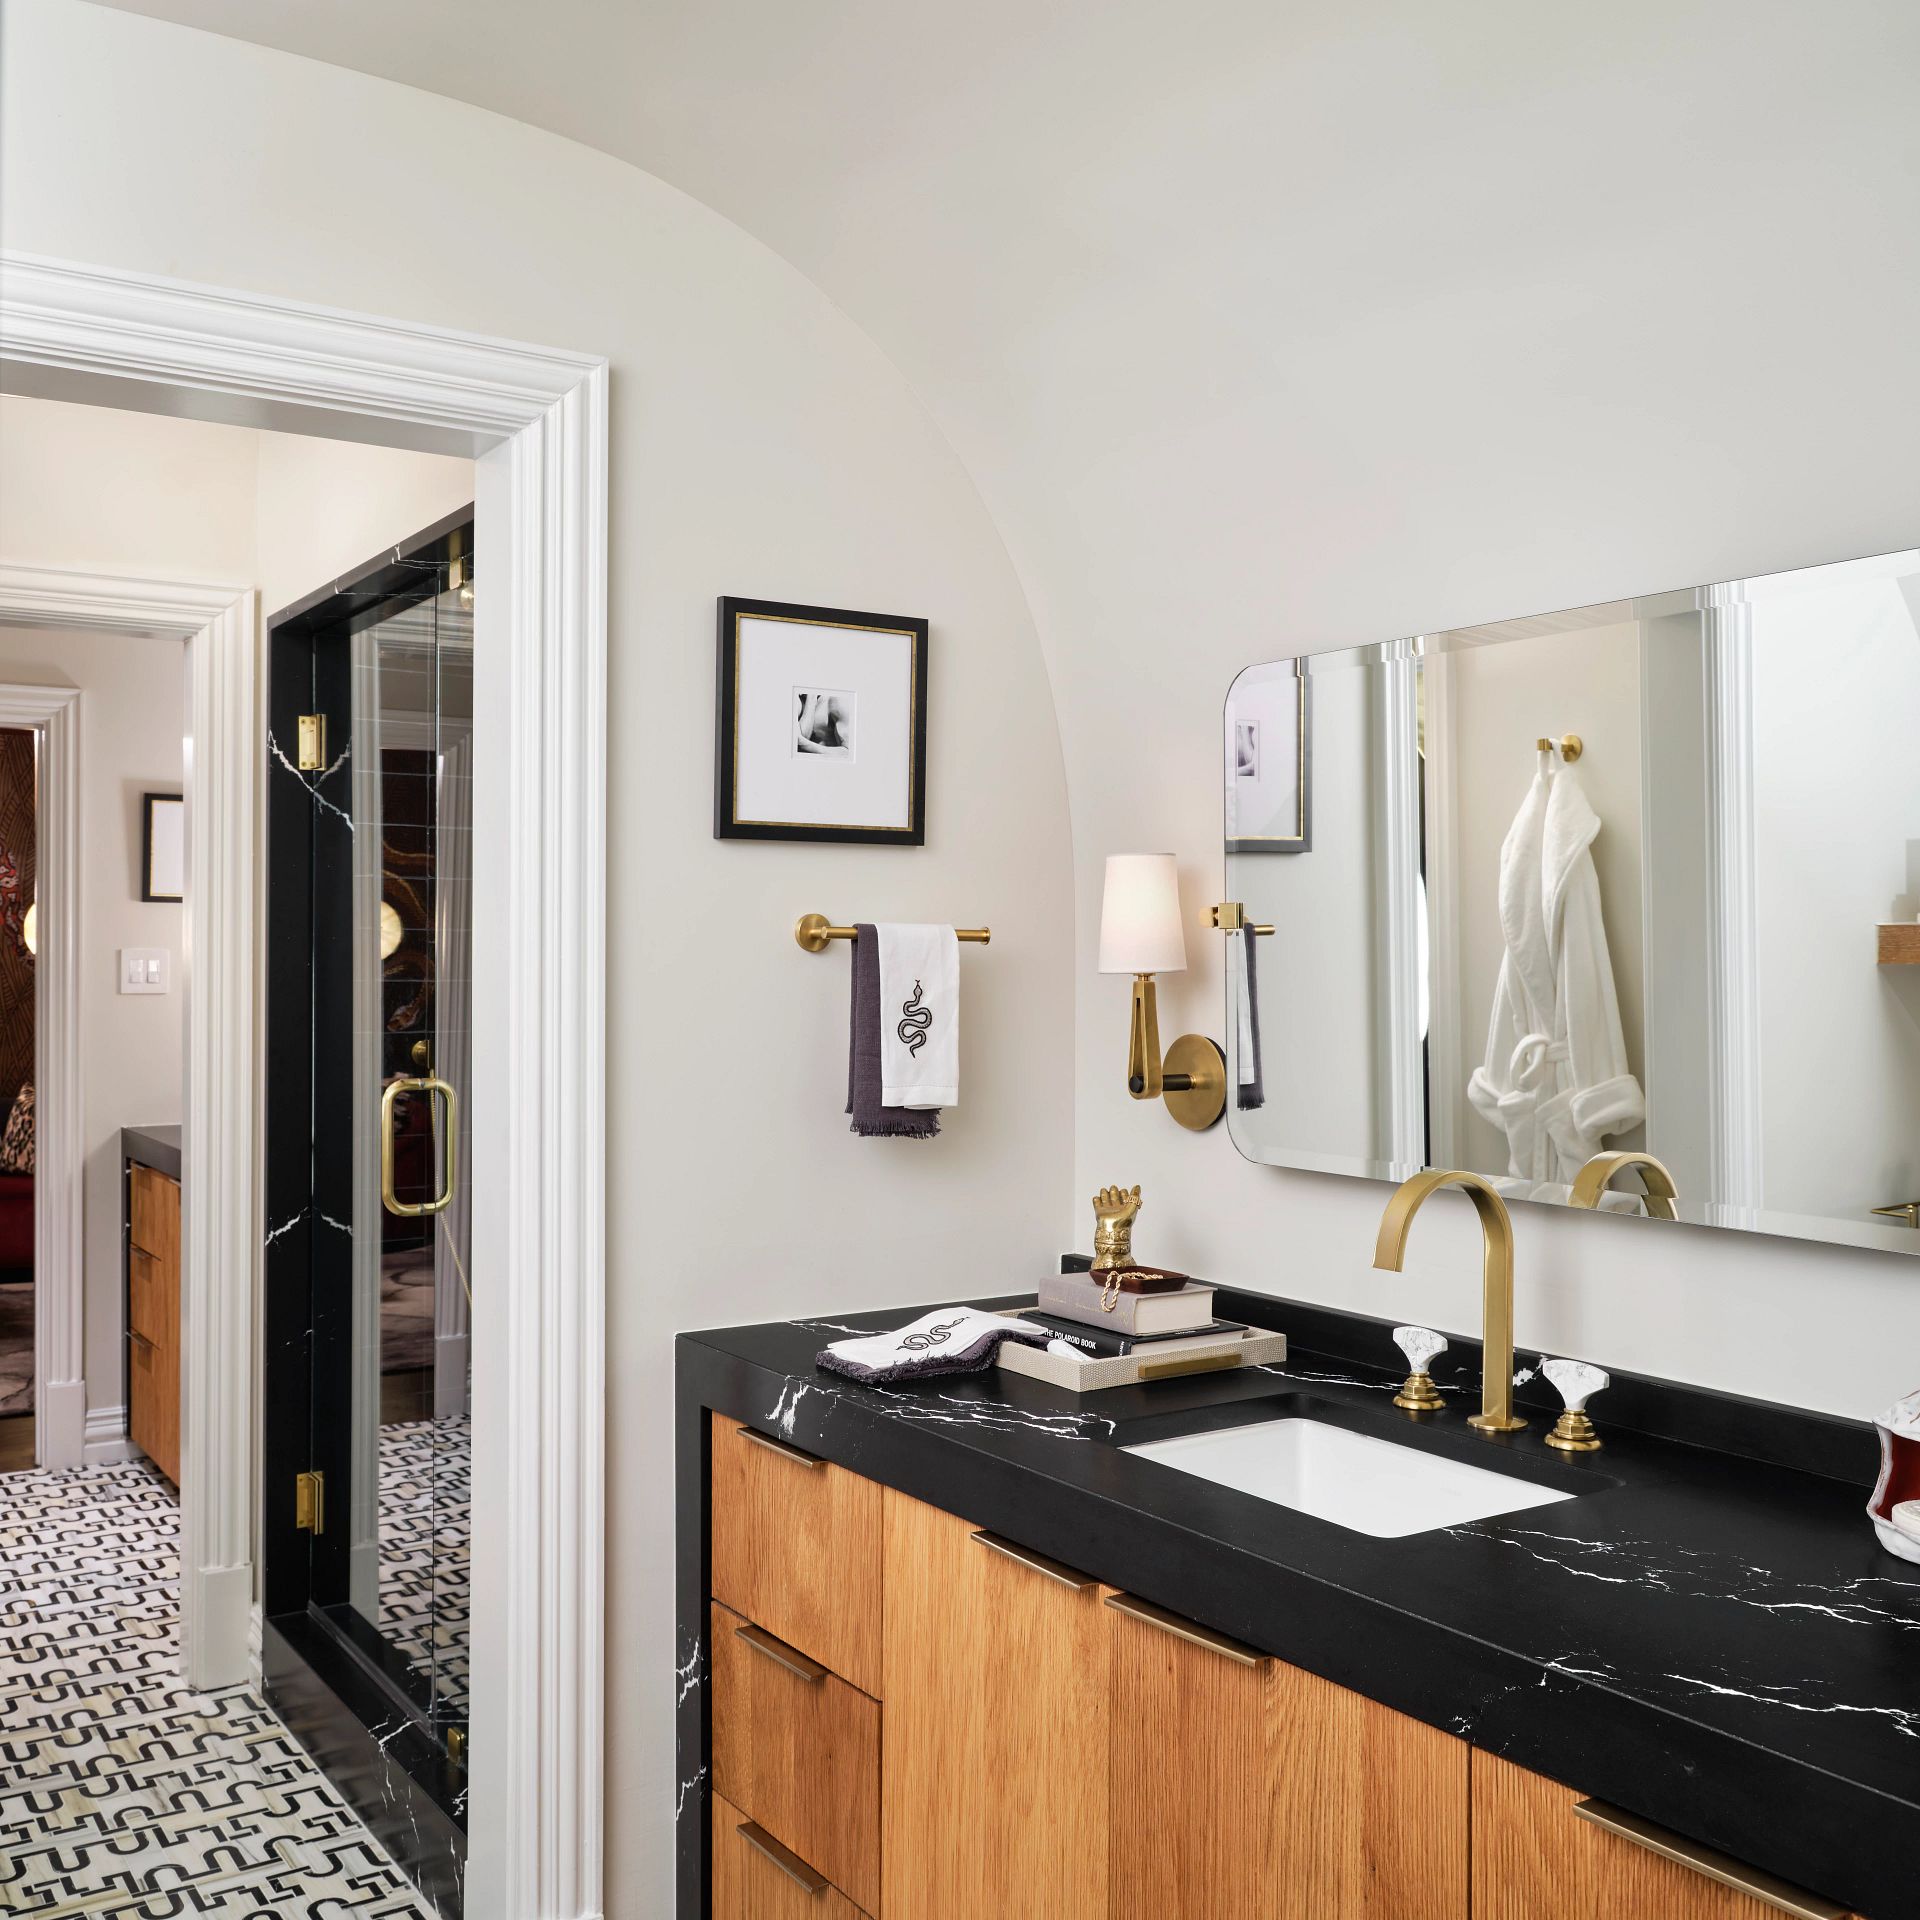 Shop Quartz Bathroom Countertops | Quartz uses in the bathroom at French Creek Designs, Casper, WY